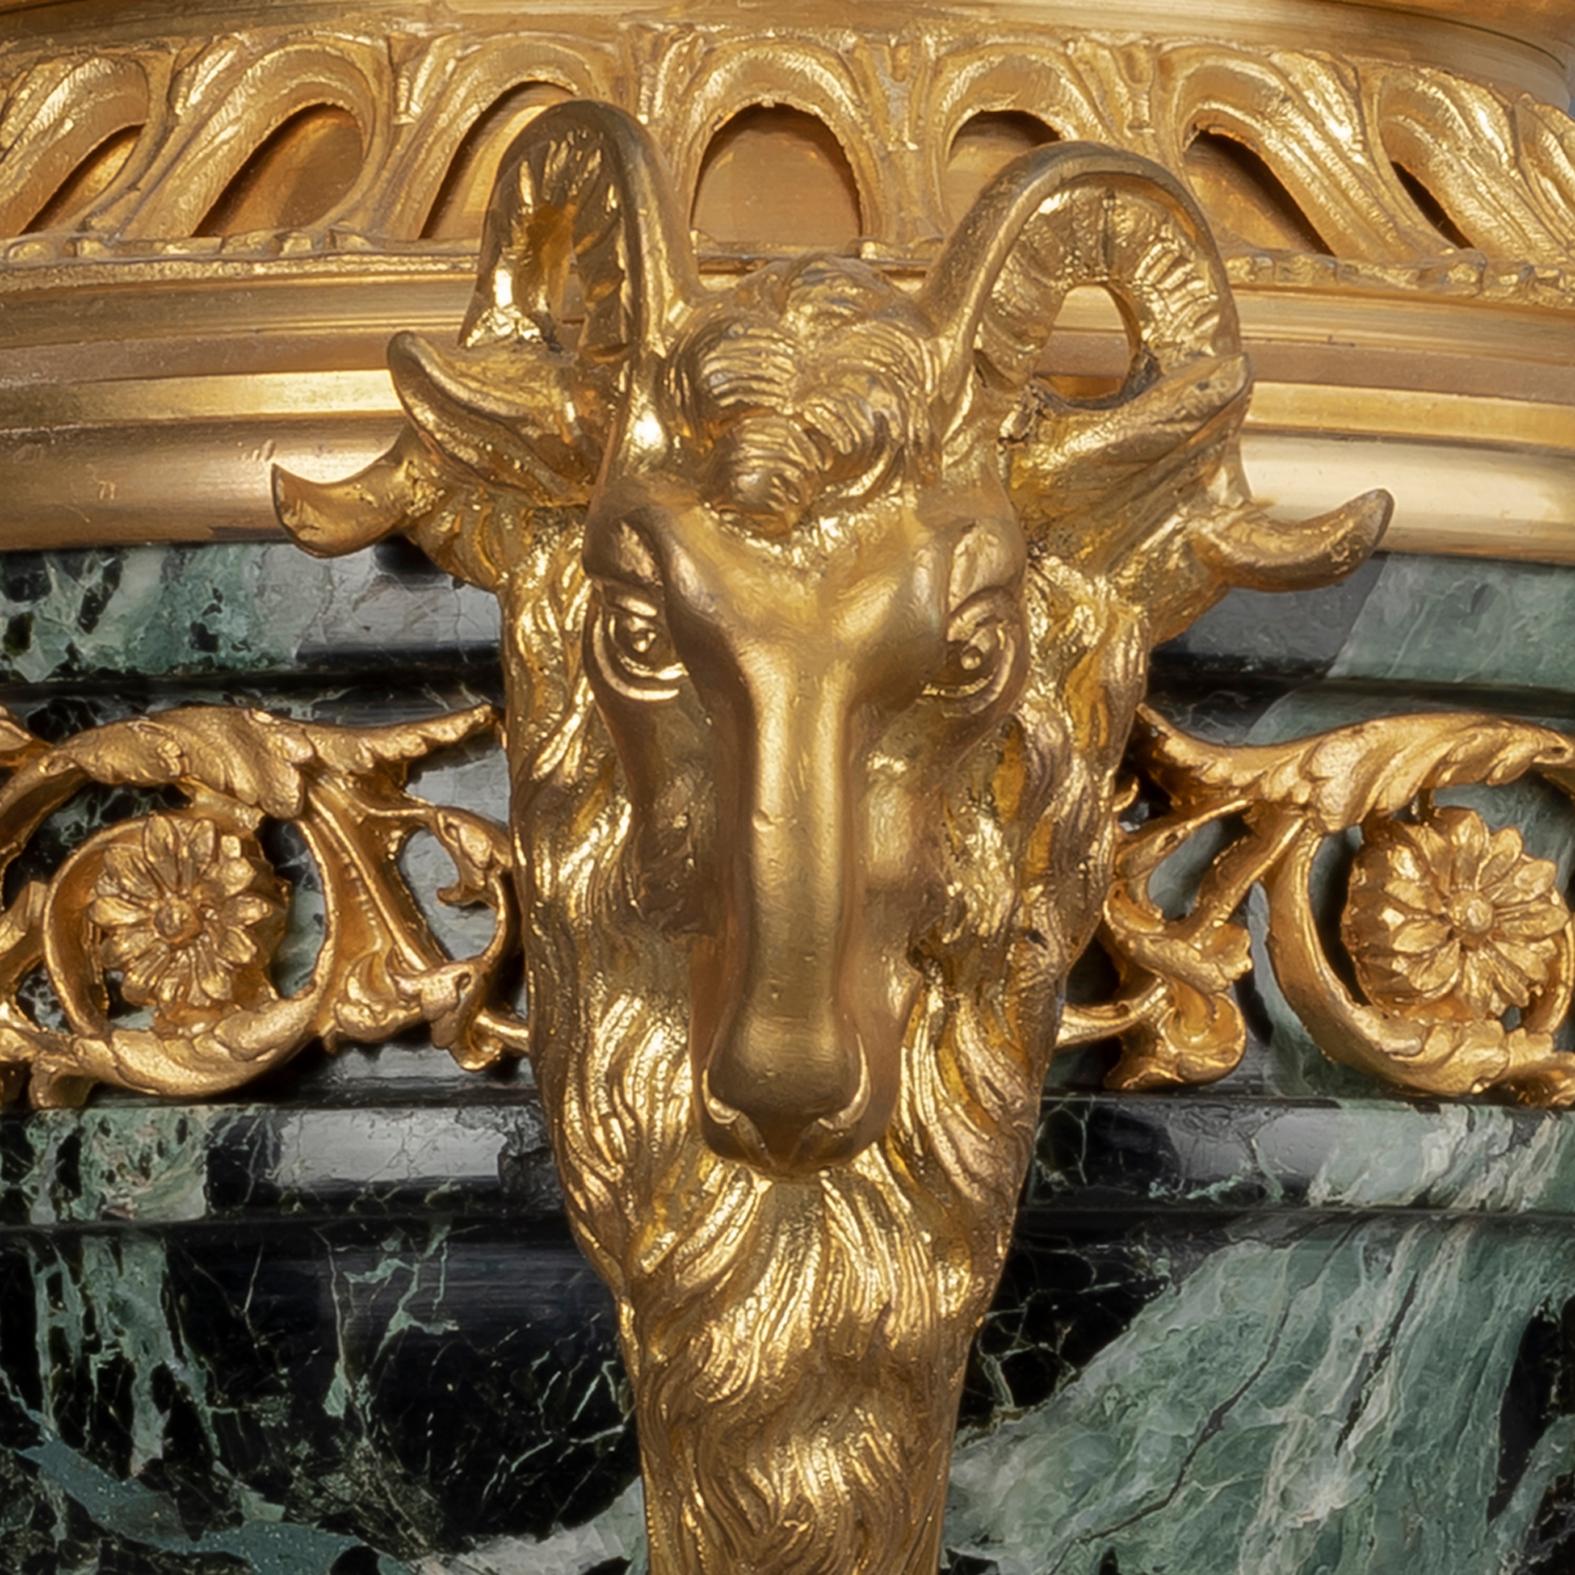 Une paire de Cassolettes de style Louis XVI en bronze doré et marbre.

Chacune avec une urne et un couvercle en marbre Verde antico ornés de guirlandes feuillagées et d'un fleuron en forme de baie, supportés par une colonne en spirale entourée